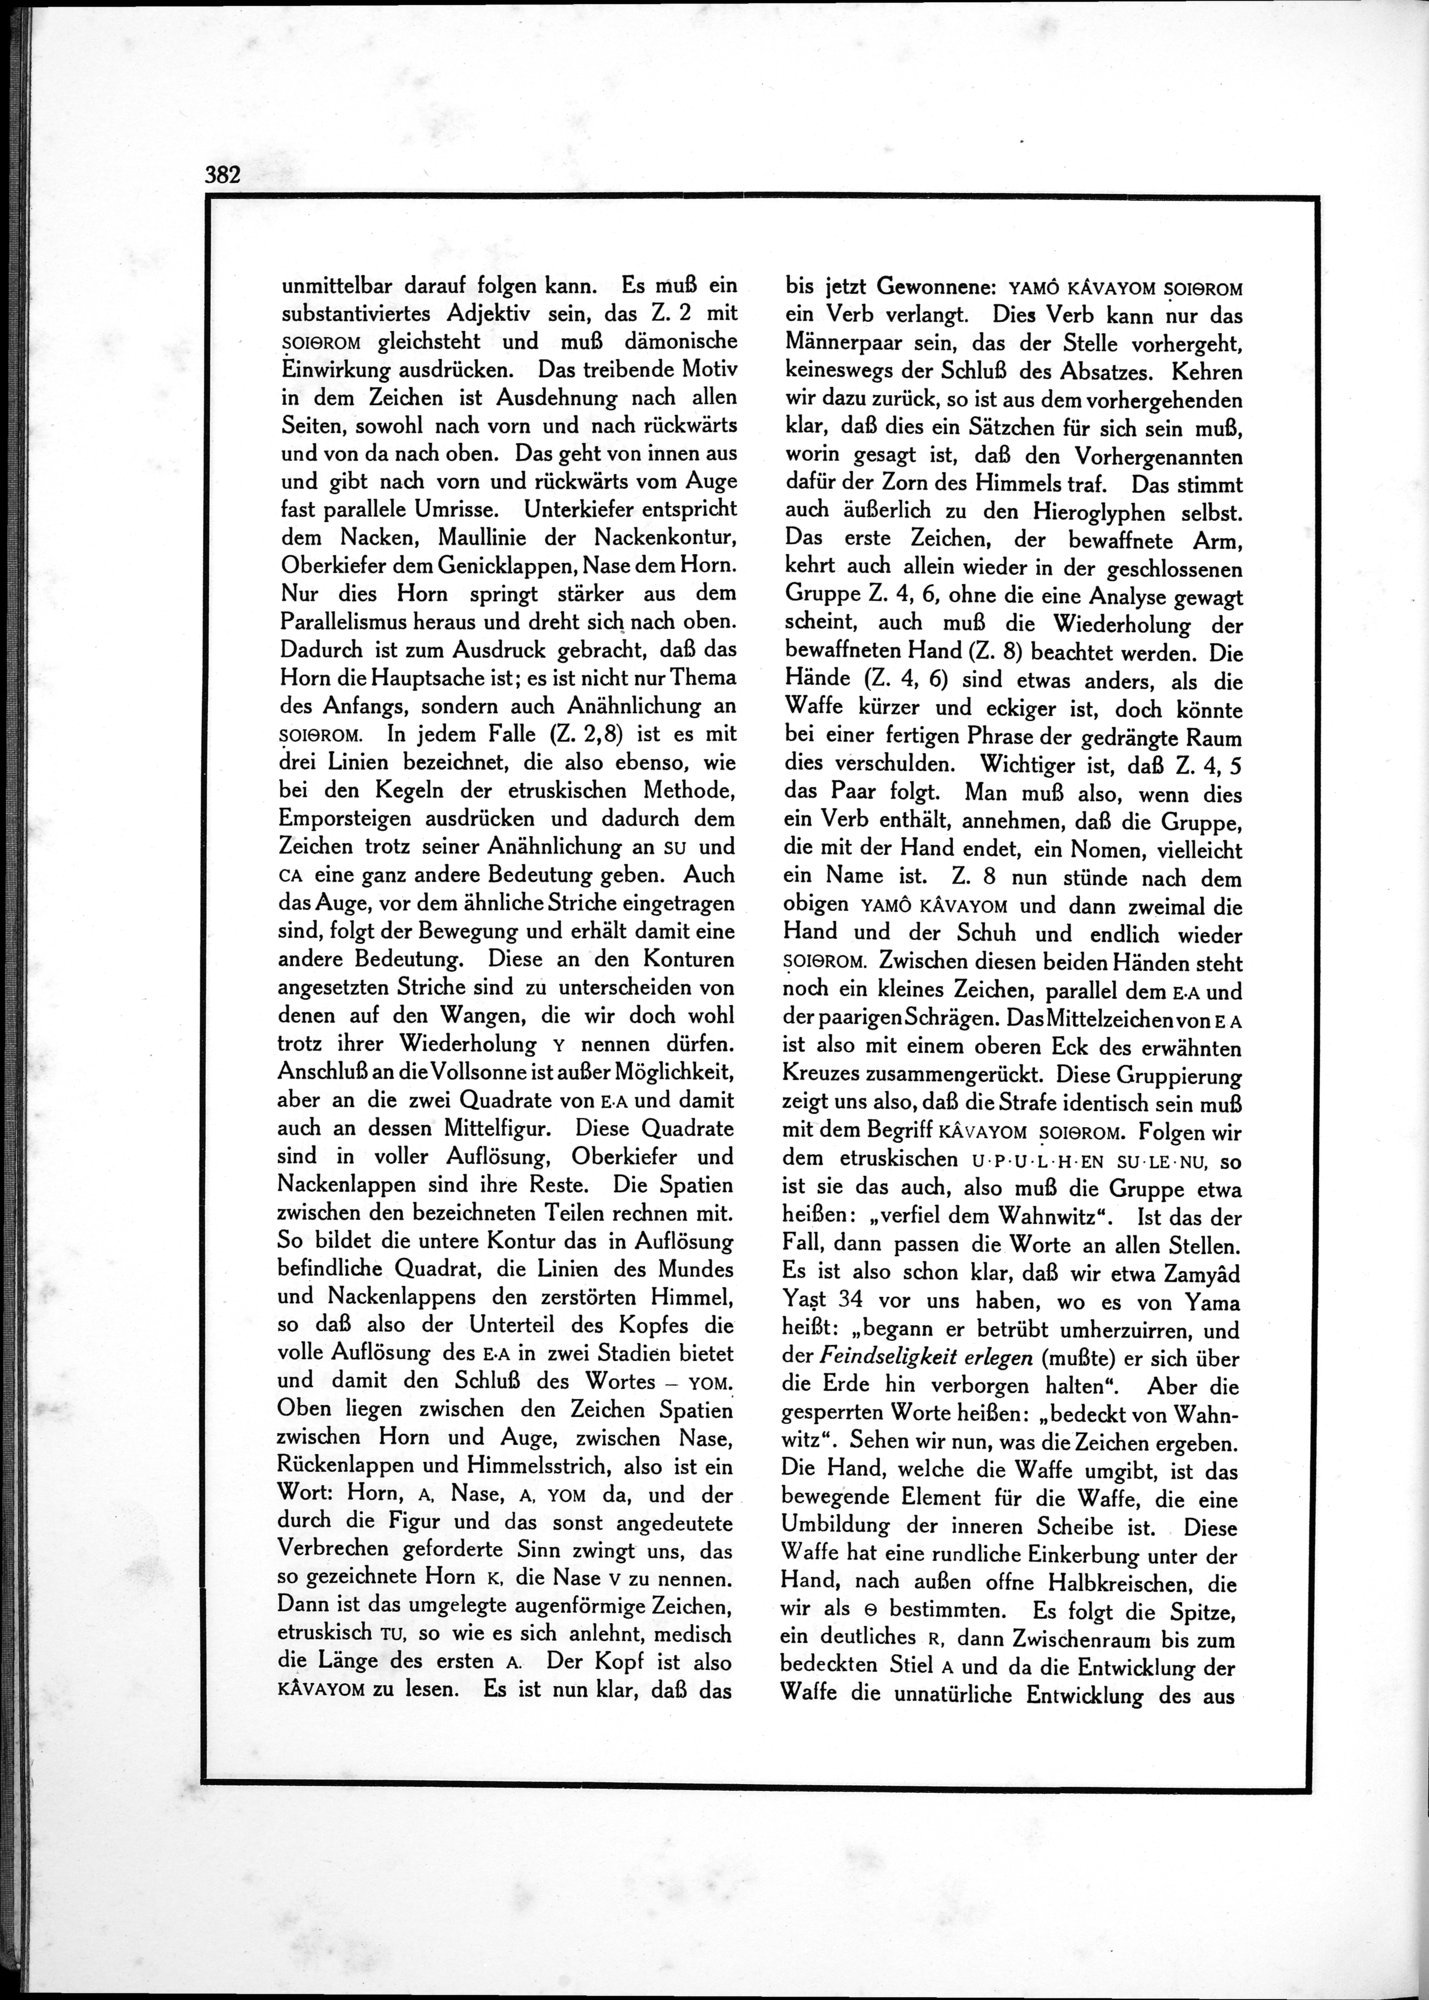 Die Teufel des Avesta und Ihre Beziehungen zur Ikonographie des Buddhismus Zentral-Asiens : vol.1 / Page 386 (Grayscale High Resolution Image)